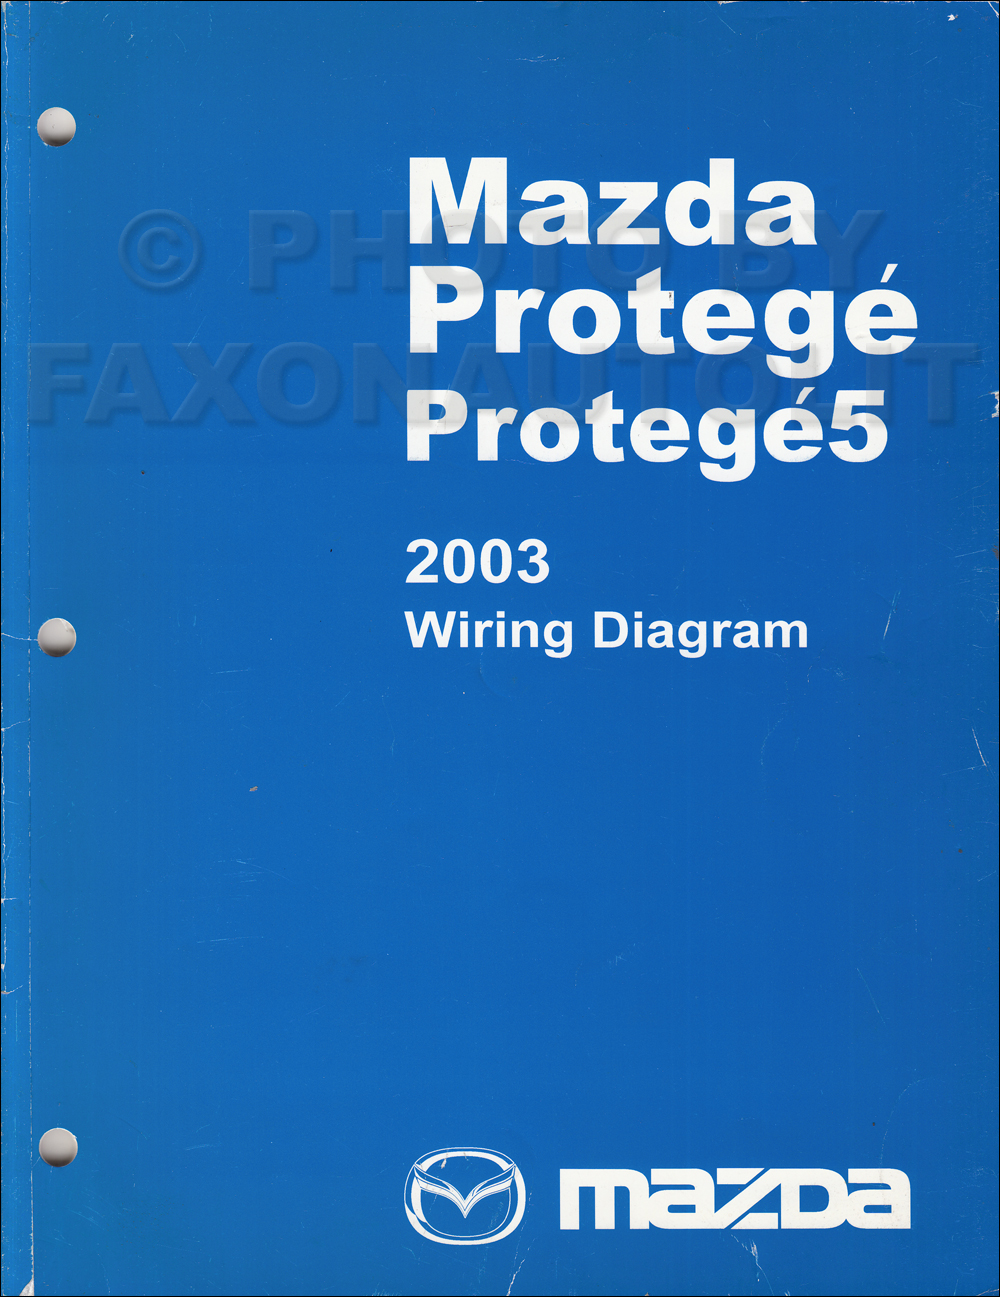 2003 Mazda Protege and Protege5 Wiring Diagram Manual Original